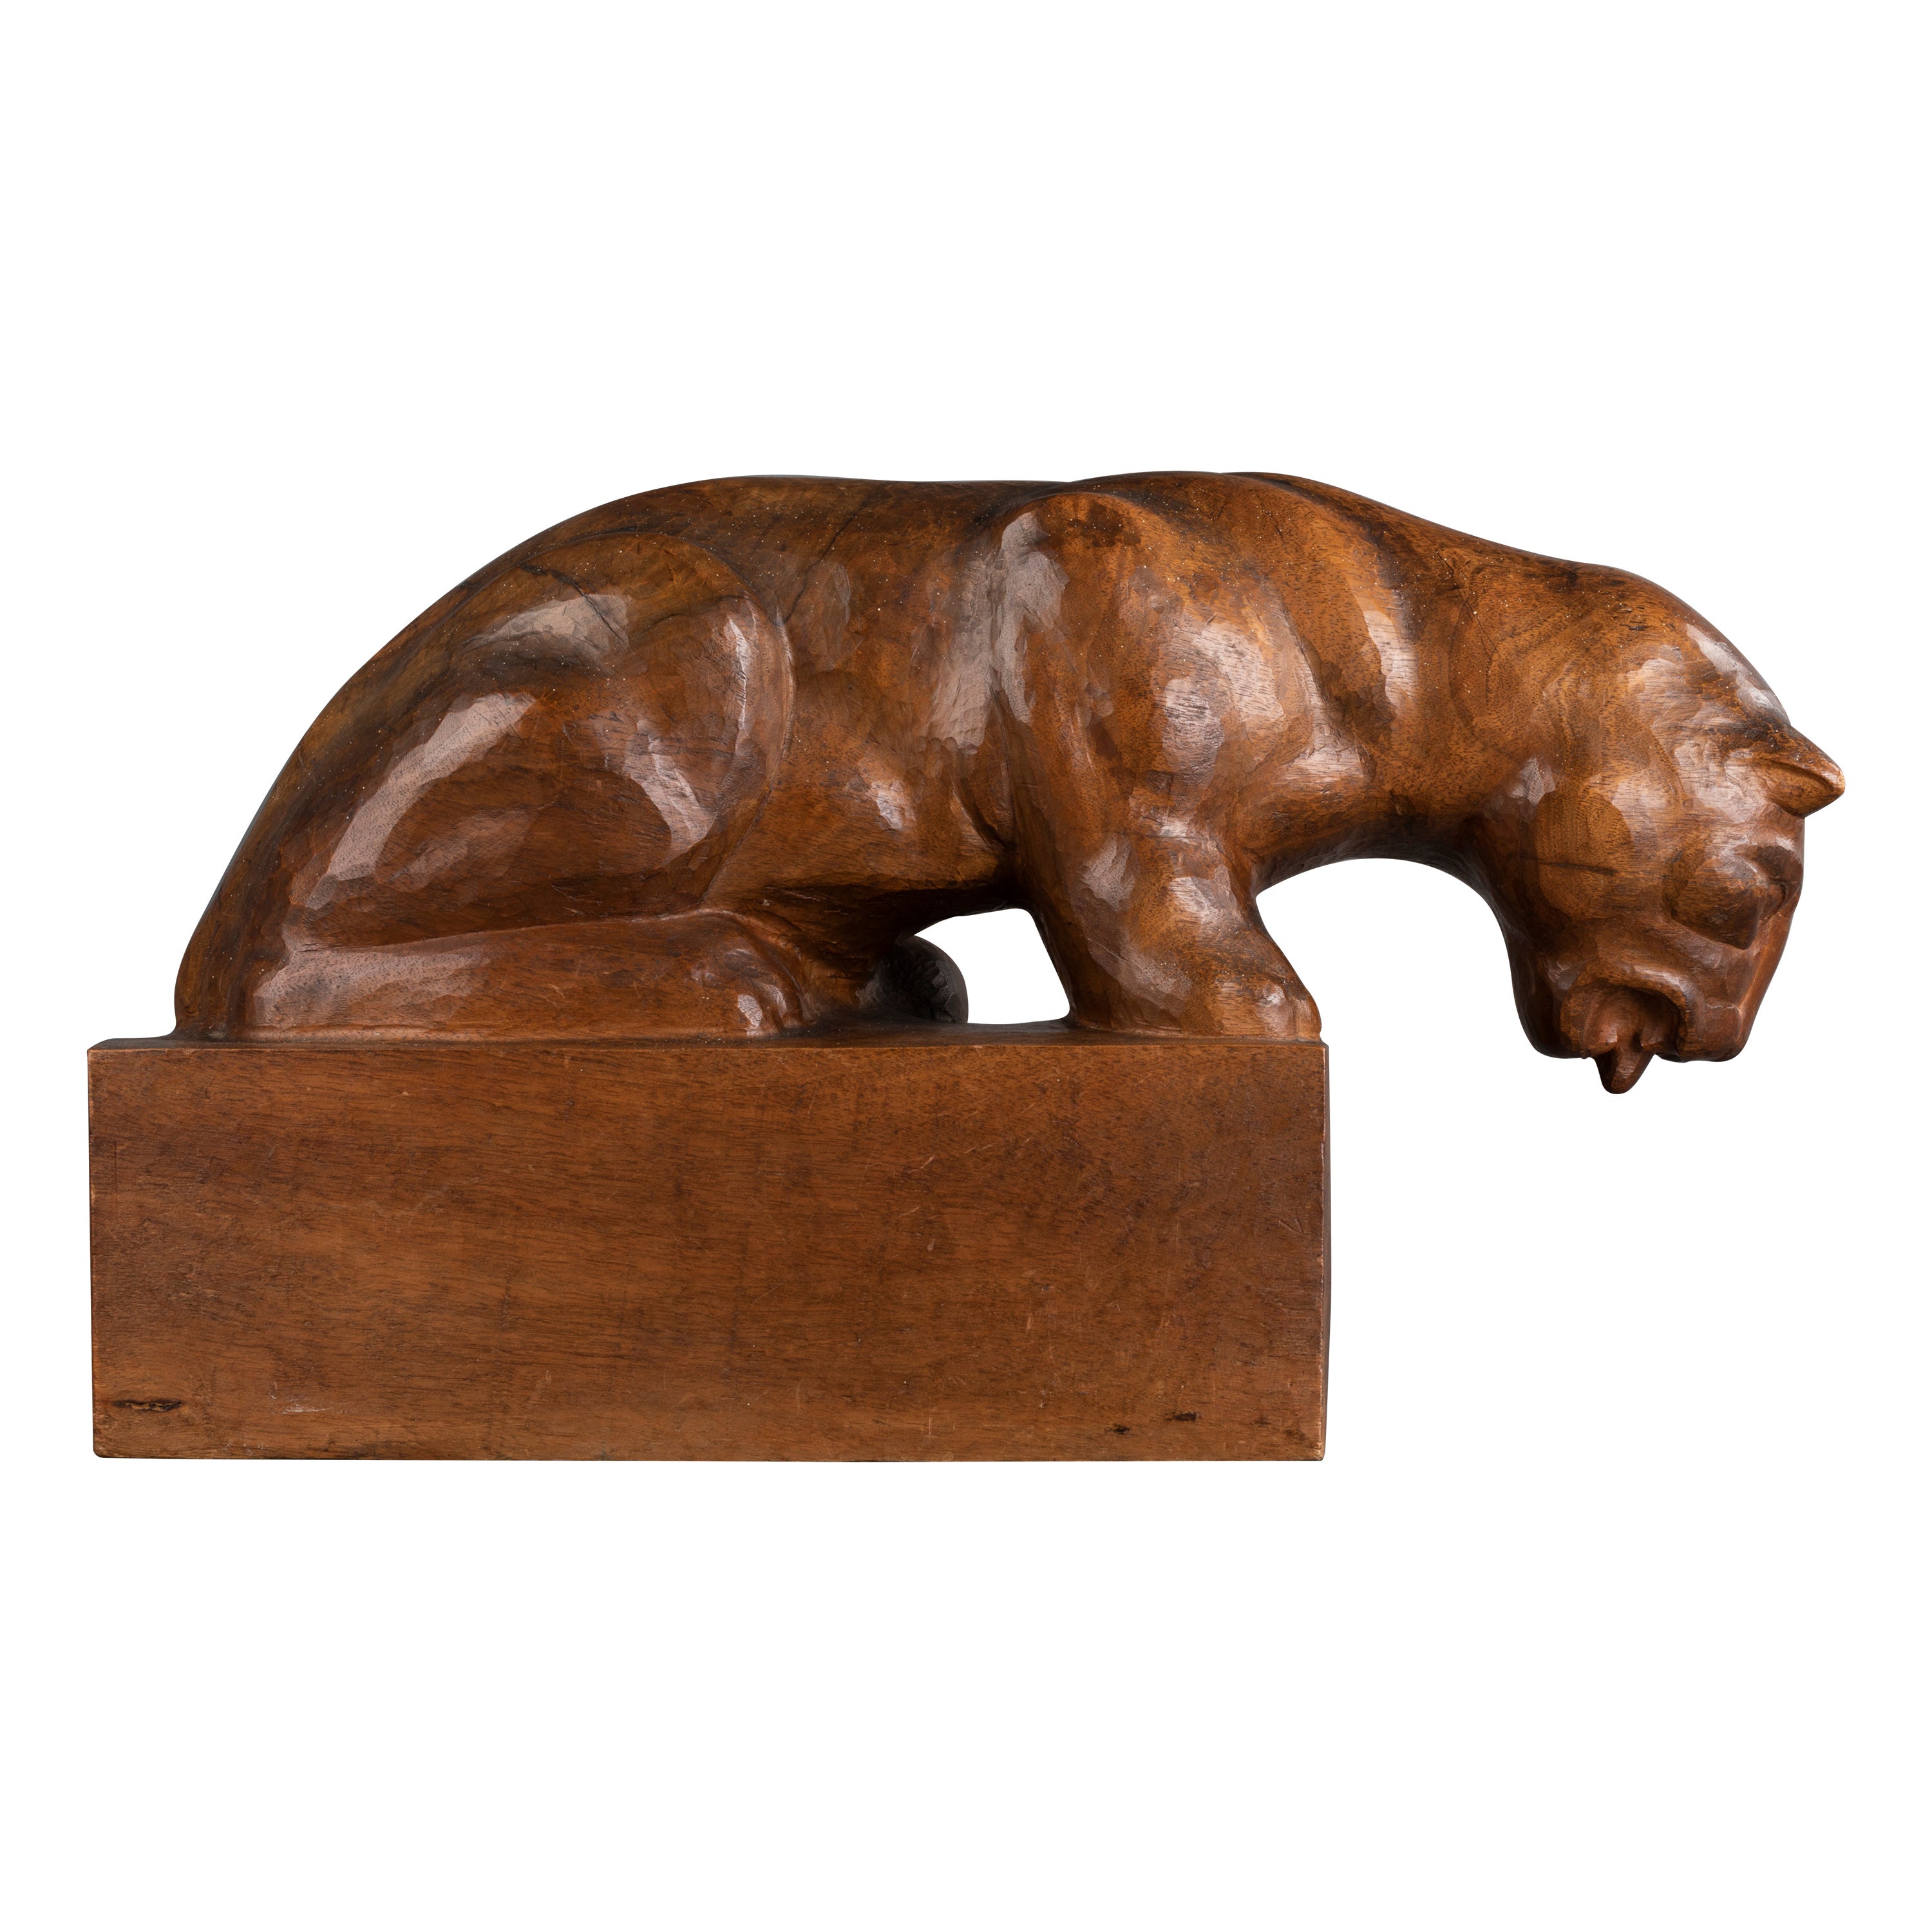 Auguste Trémont(attrib.) : Lion cub drinking, carved wood sculpture c.1950 For Sale